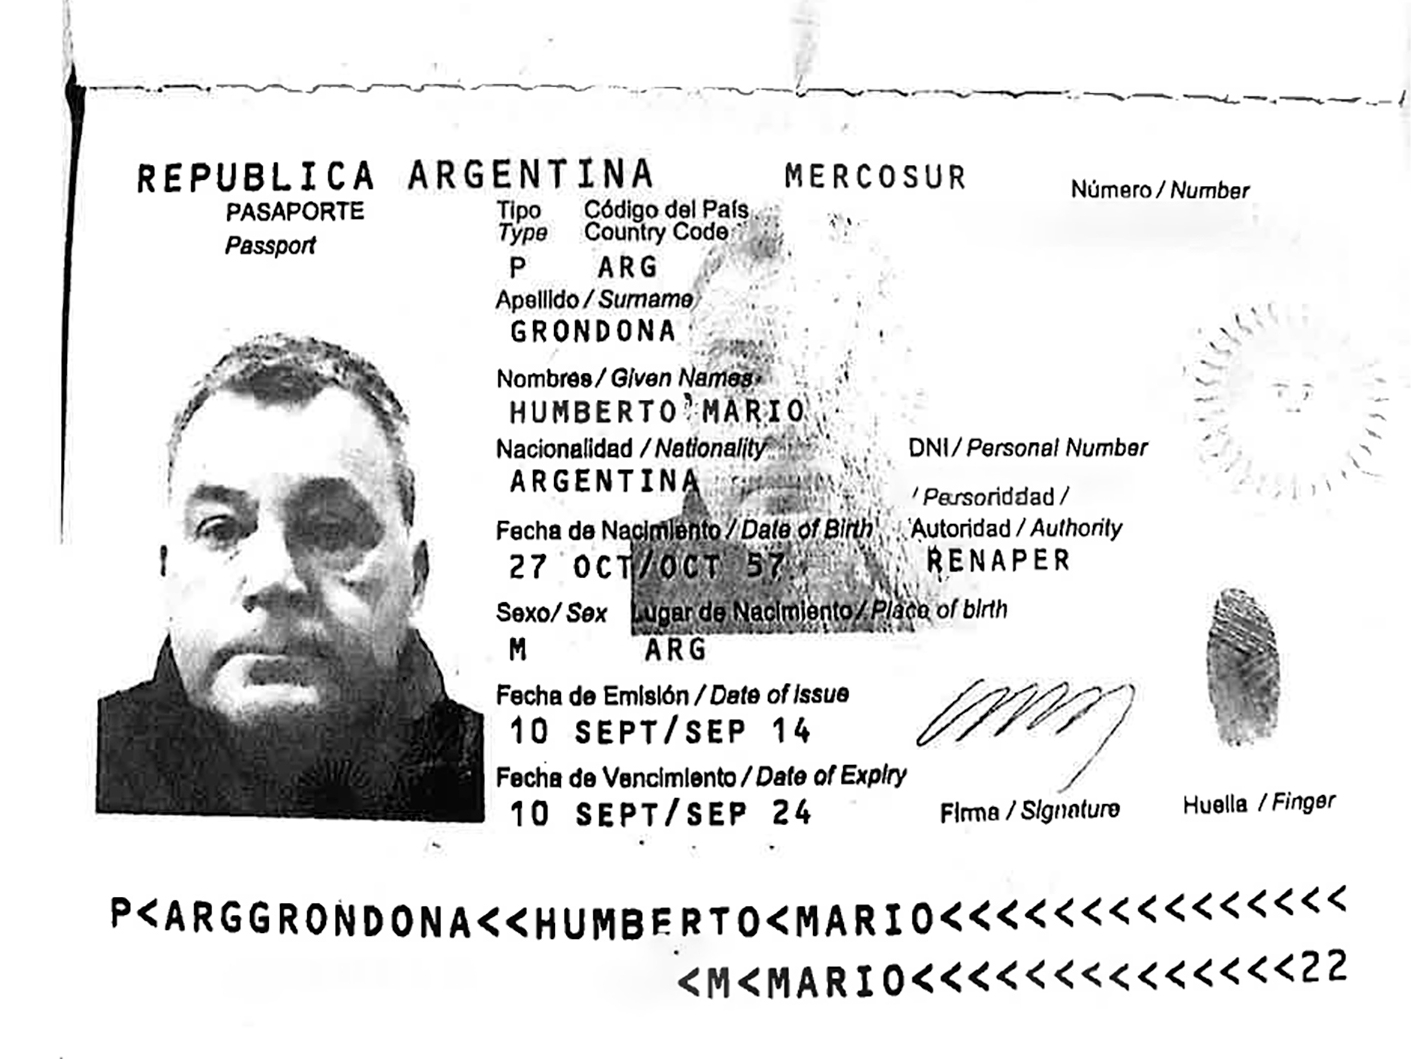 Copia del pasaporte de Humberto Grondona que figura entre los documentos de Pandora Paers